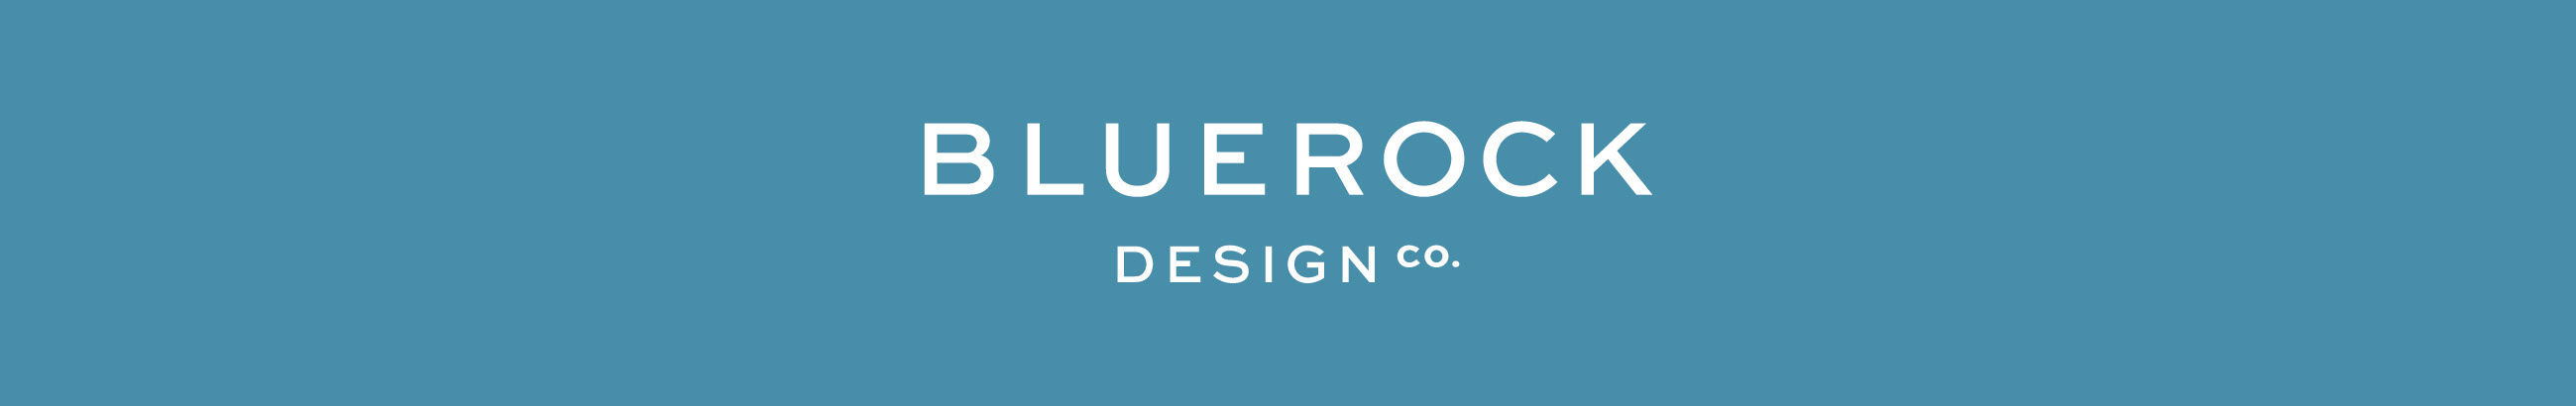 Bluerock Design Co. のプロファイルバナー